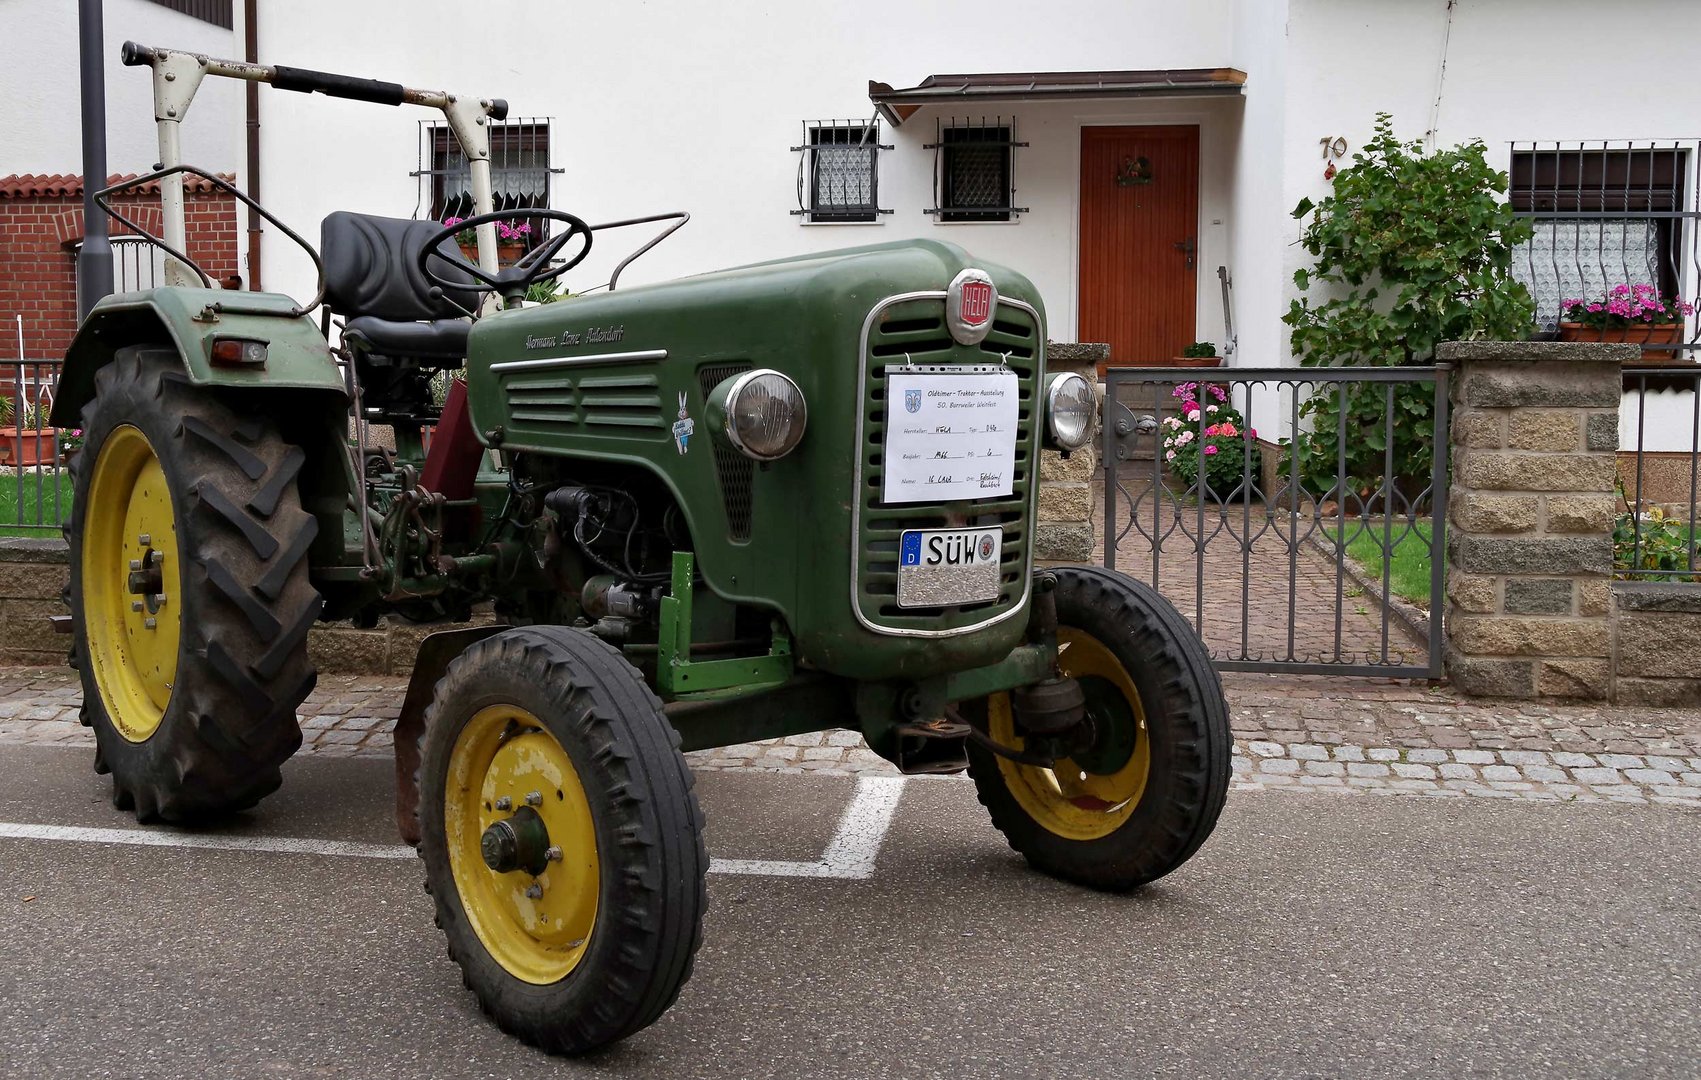 Traktorausstellung beim Weinfest...